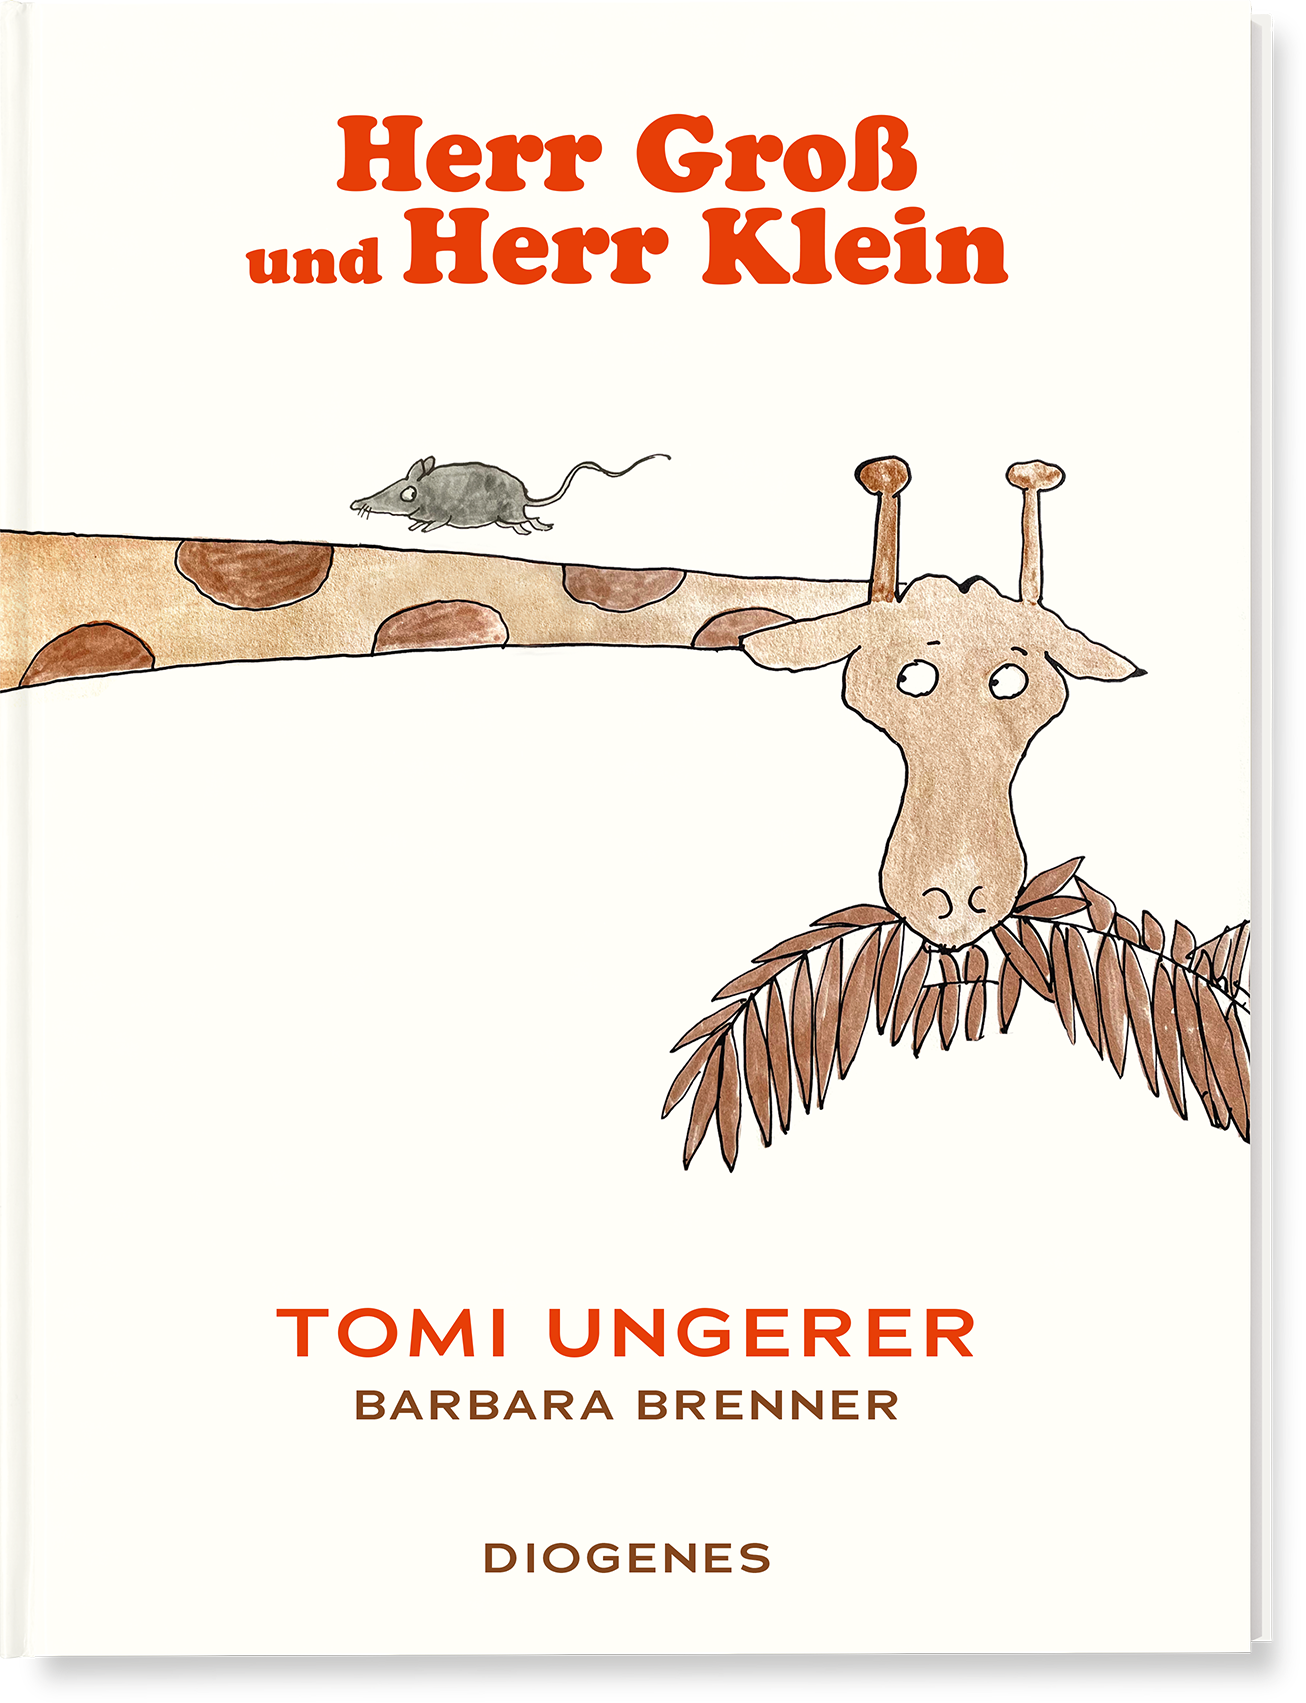 Tomi Ungerer | Barbara Brenner Herr Groß und Herr Klein